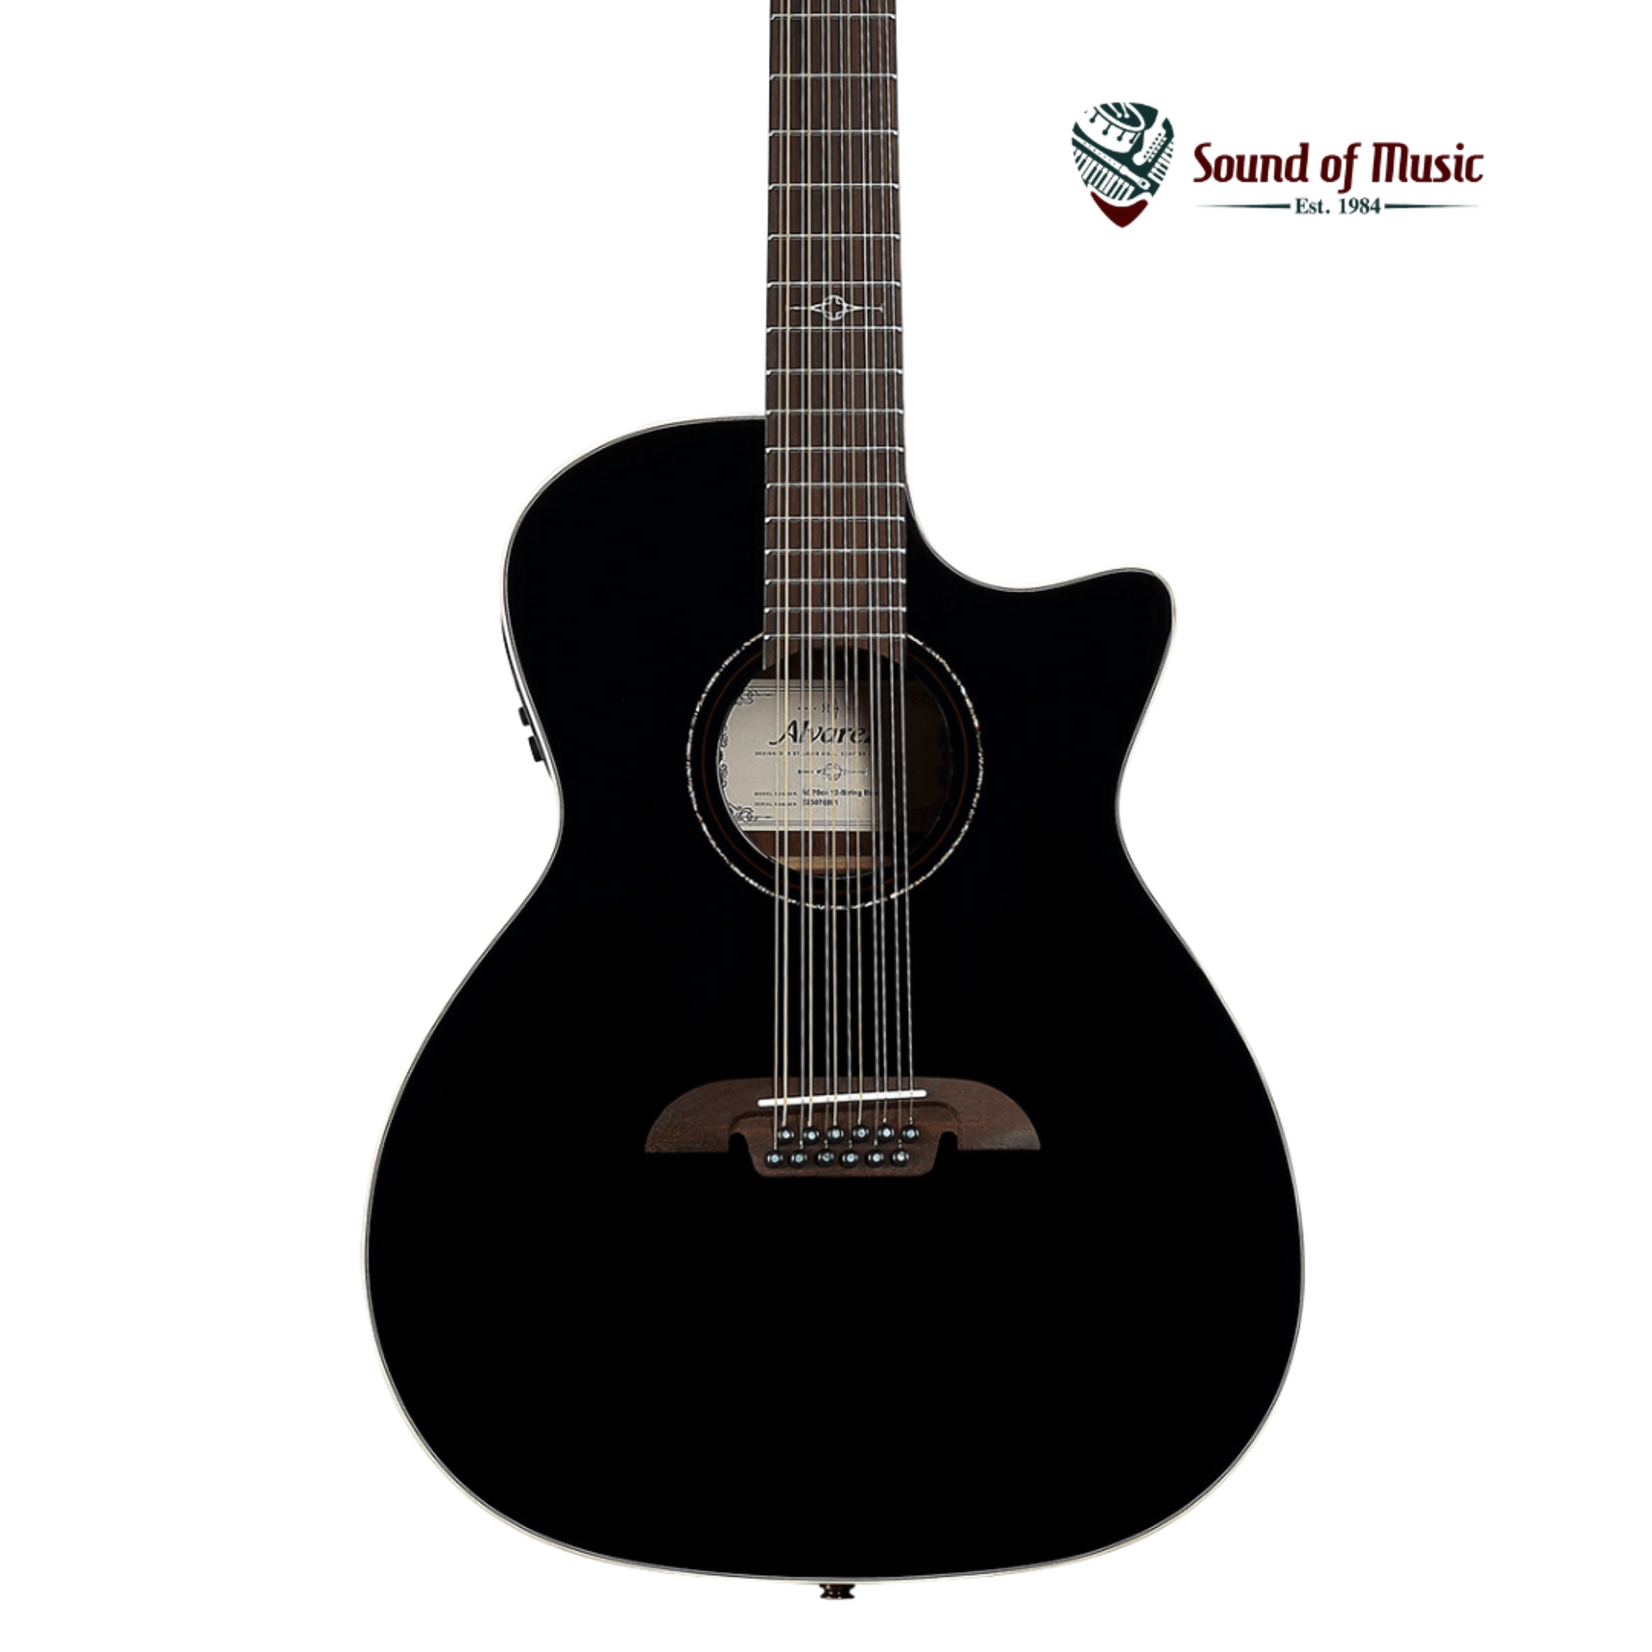 Alvarez AG70ce 12-String Acoustic-Electric Guitar - Black